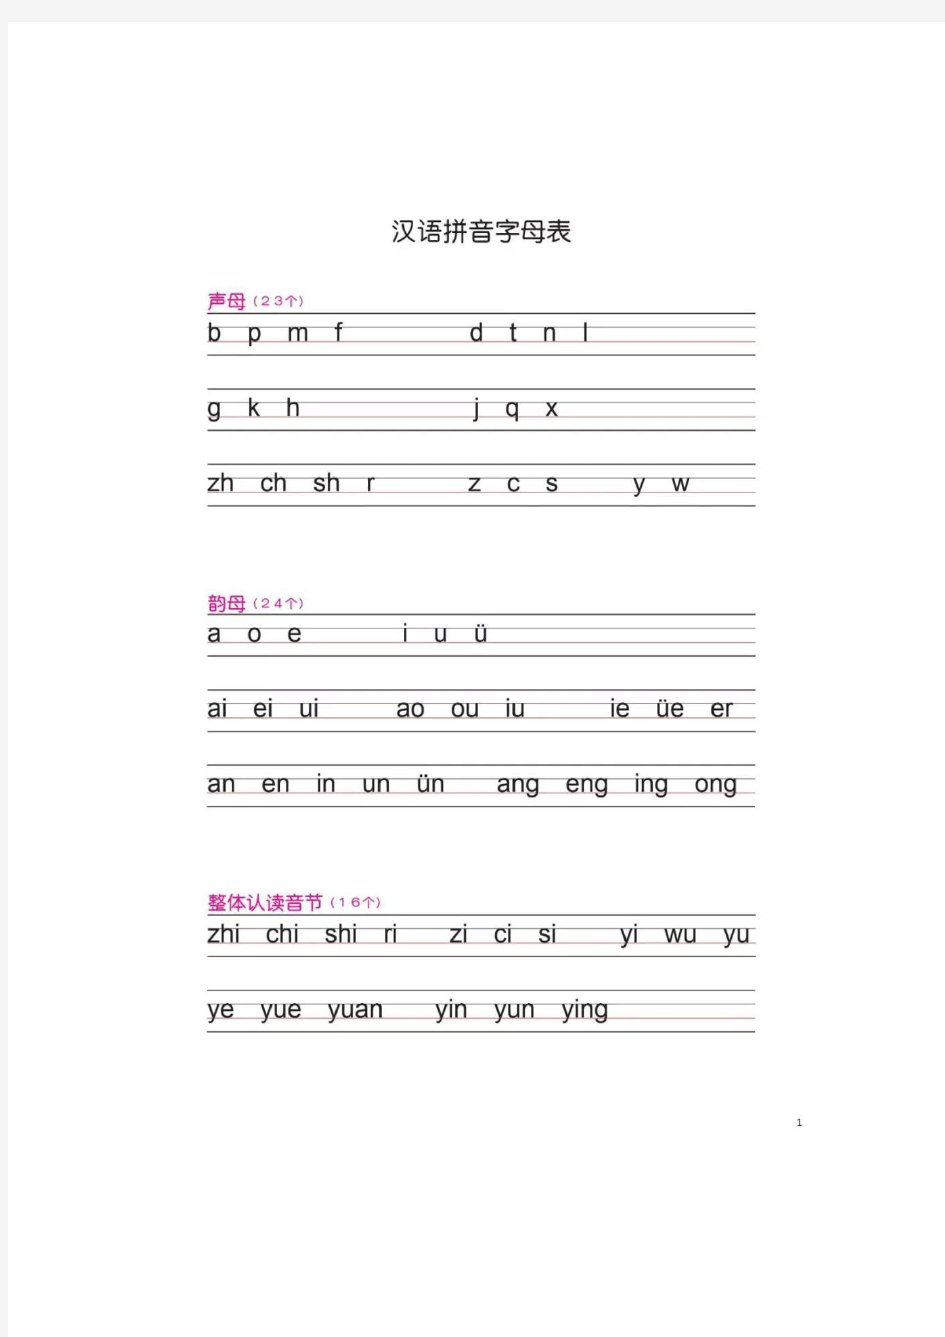 汉语拼音书写(打印版)